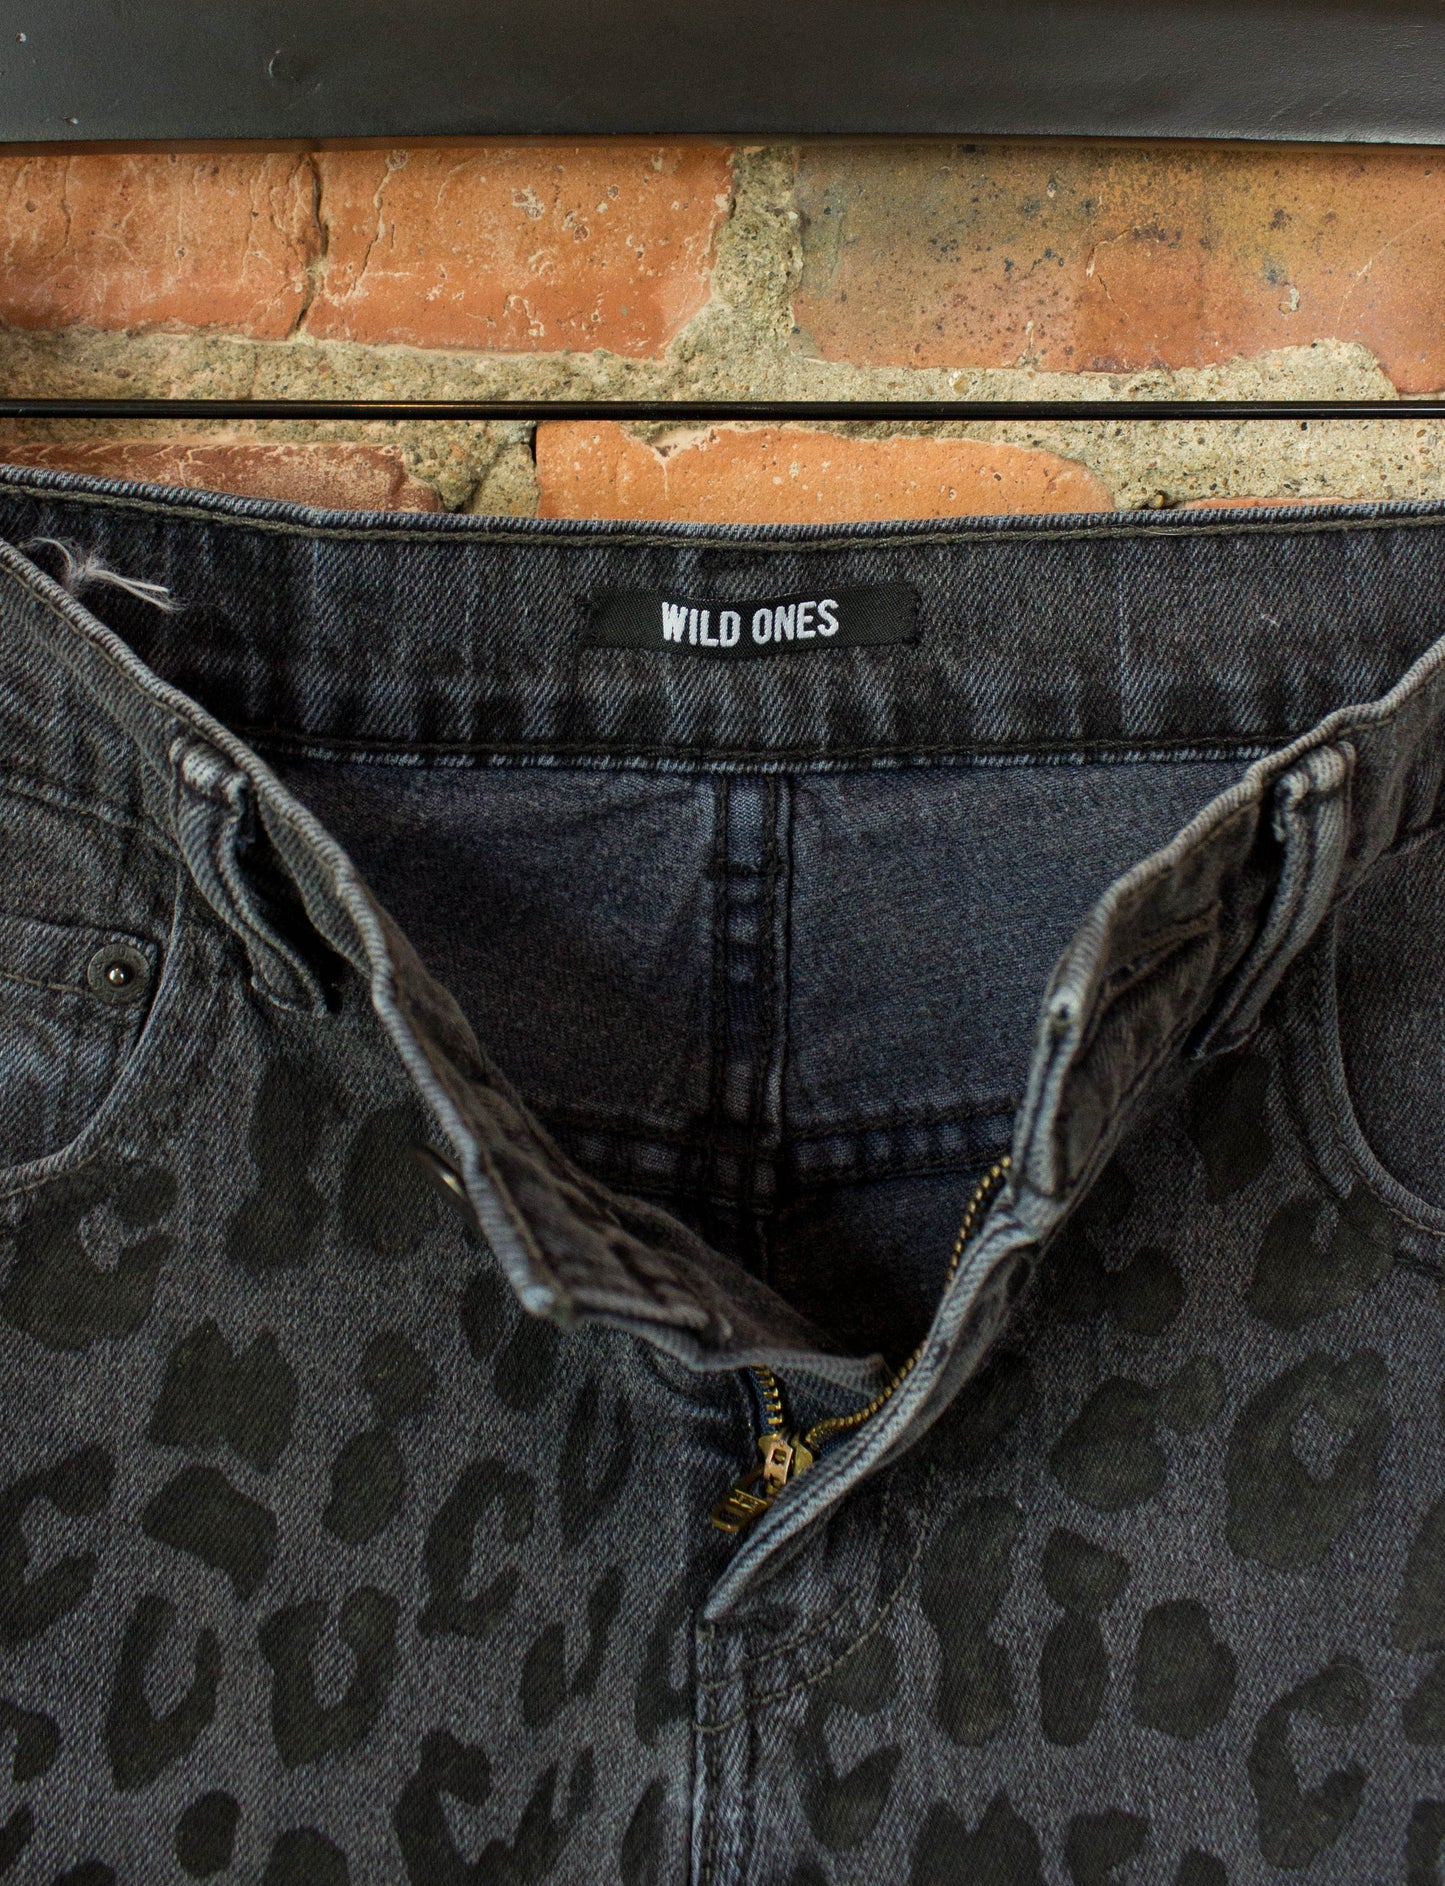 Levi's x Wild Ones Cut Off Denim Shorts 511 Slim Fit Black Leopard Print 26 Waist